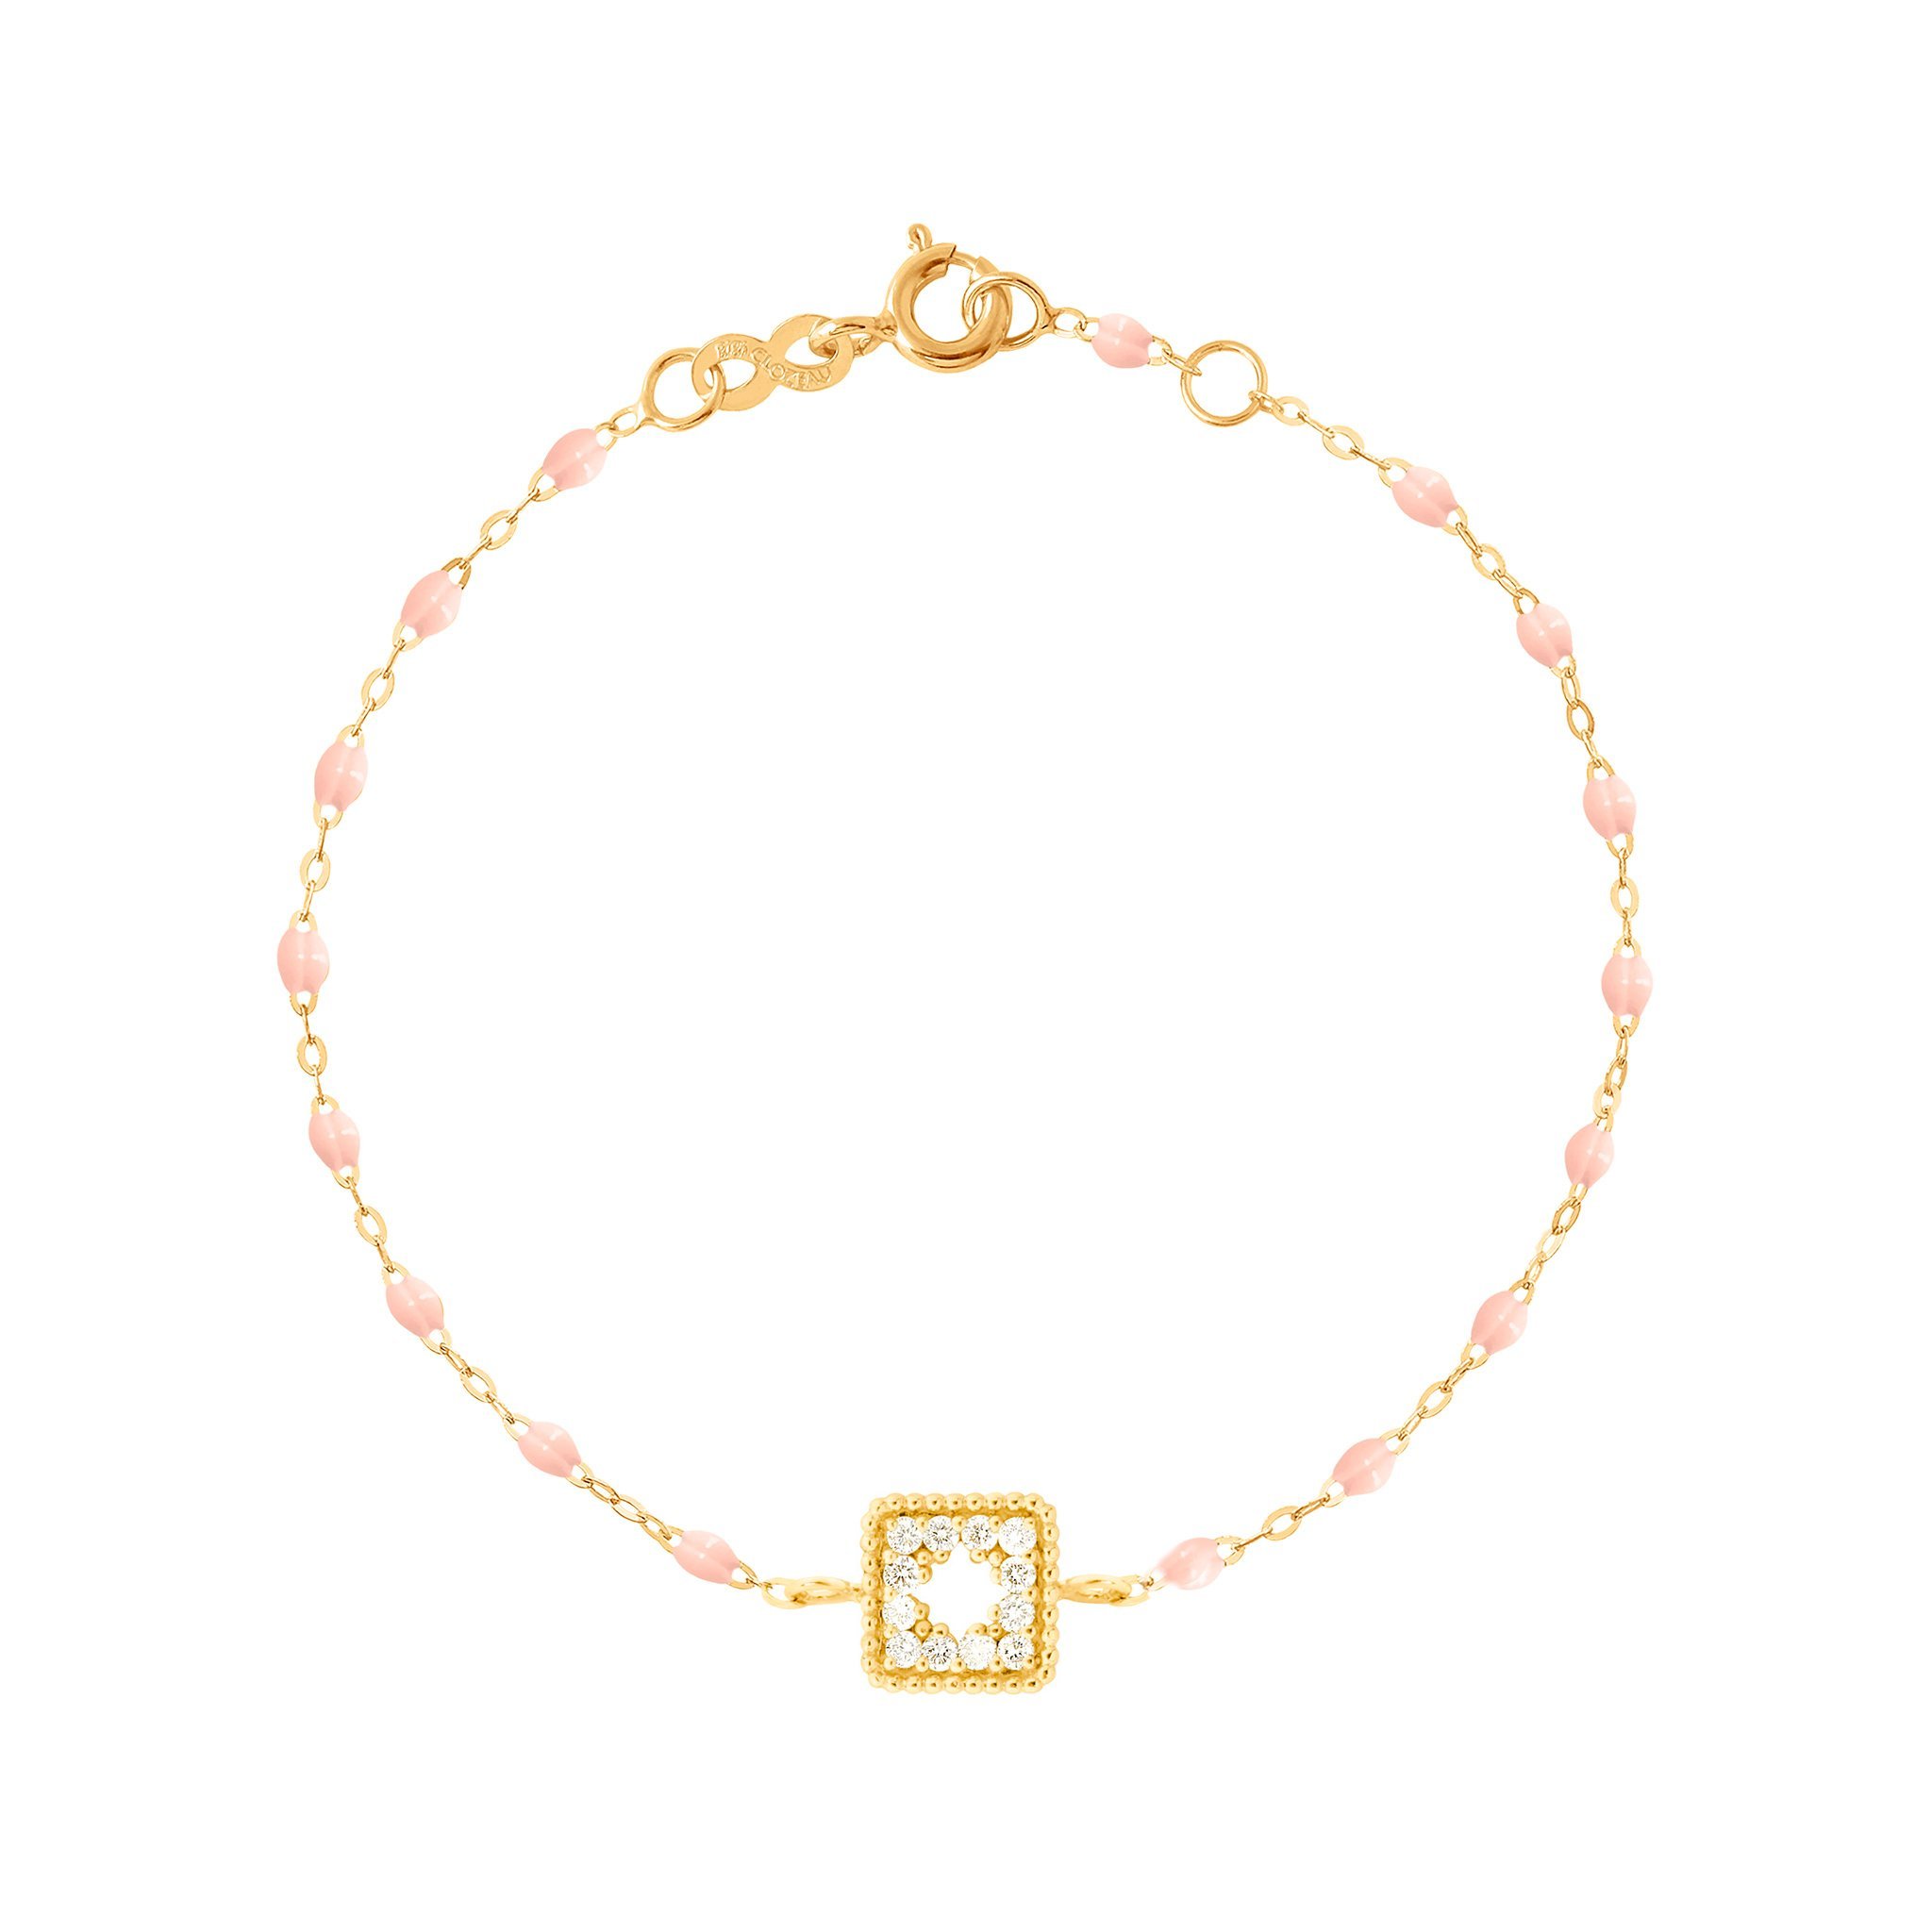 Bracelet rose bébé Trésor, diamants, or jaune, 17 cm pirate Référence :  b3tr001j2817di -1